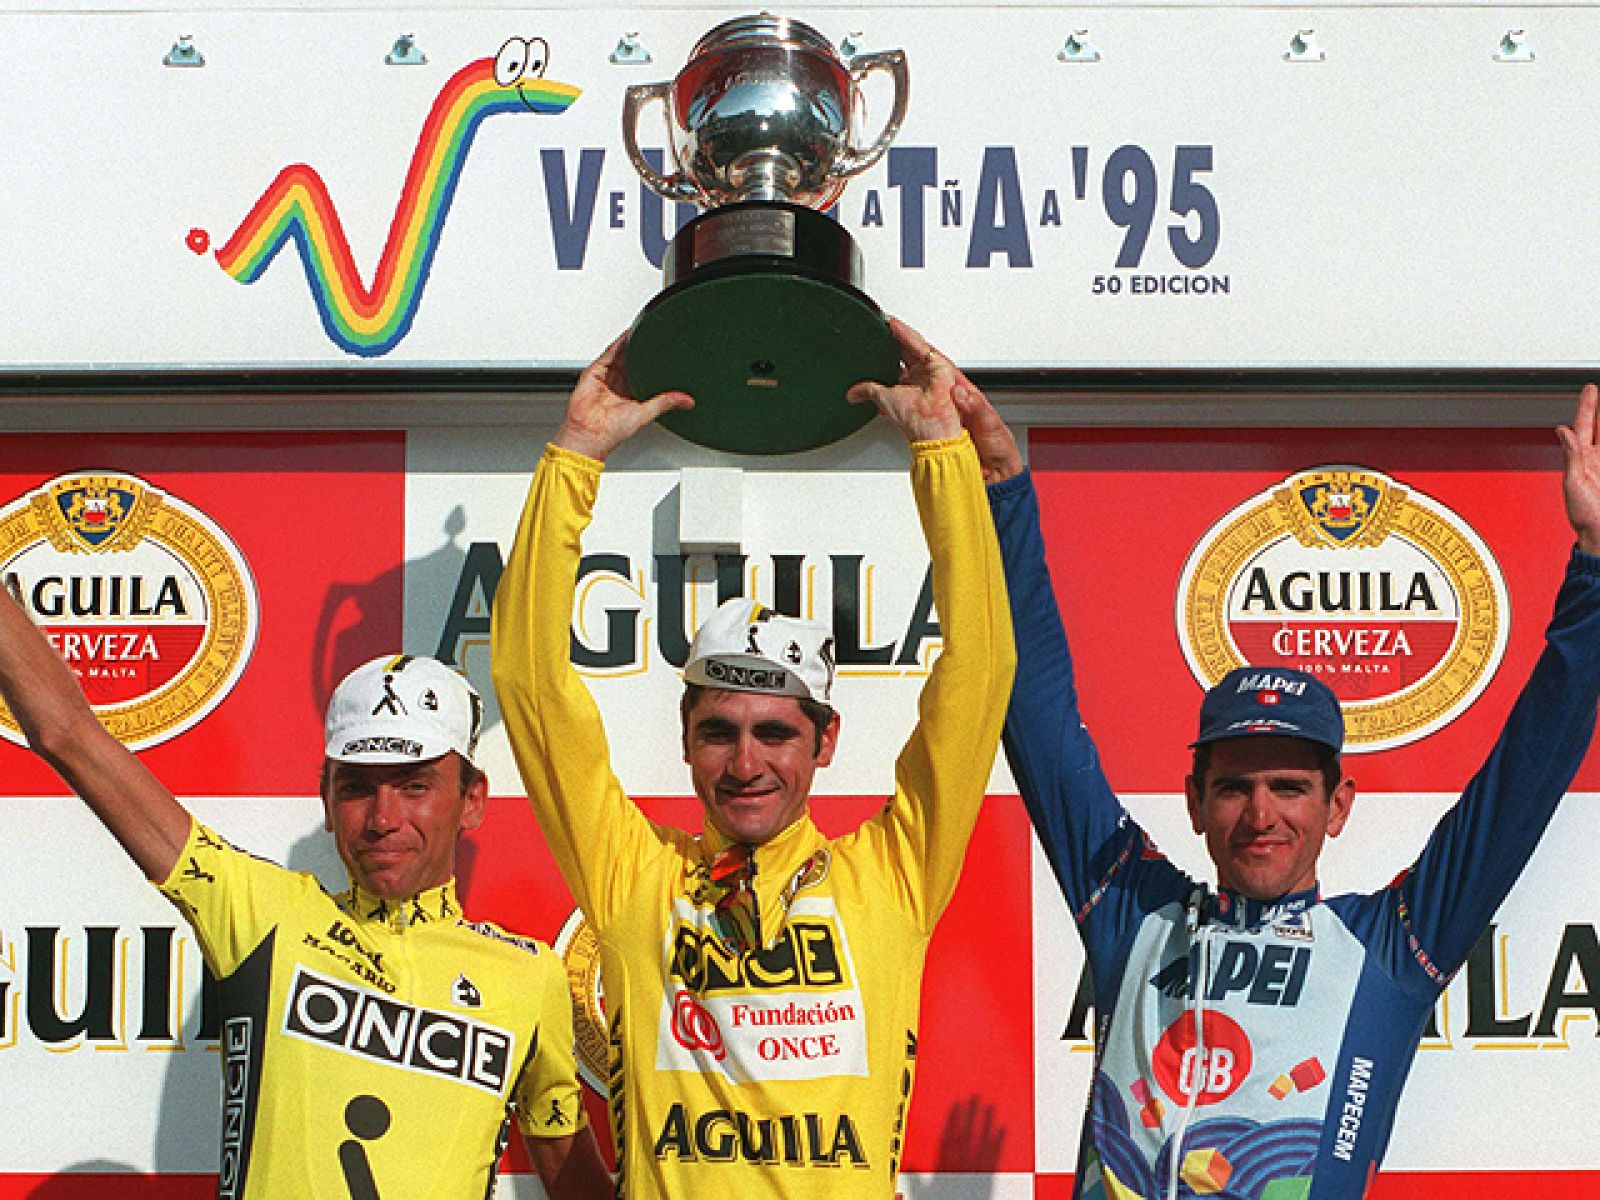 Laurent Jalabert gana la Vuelta 95